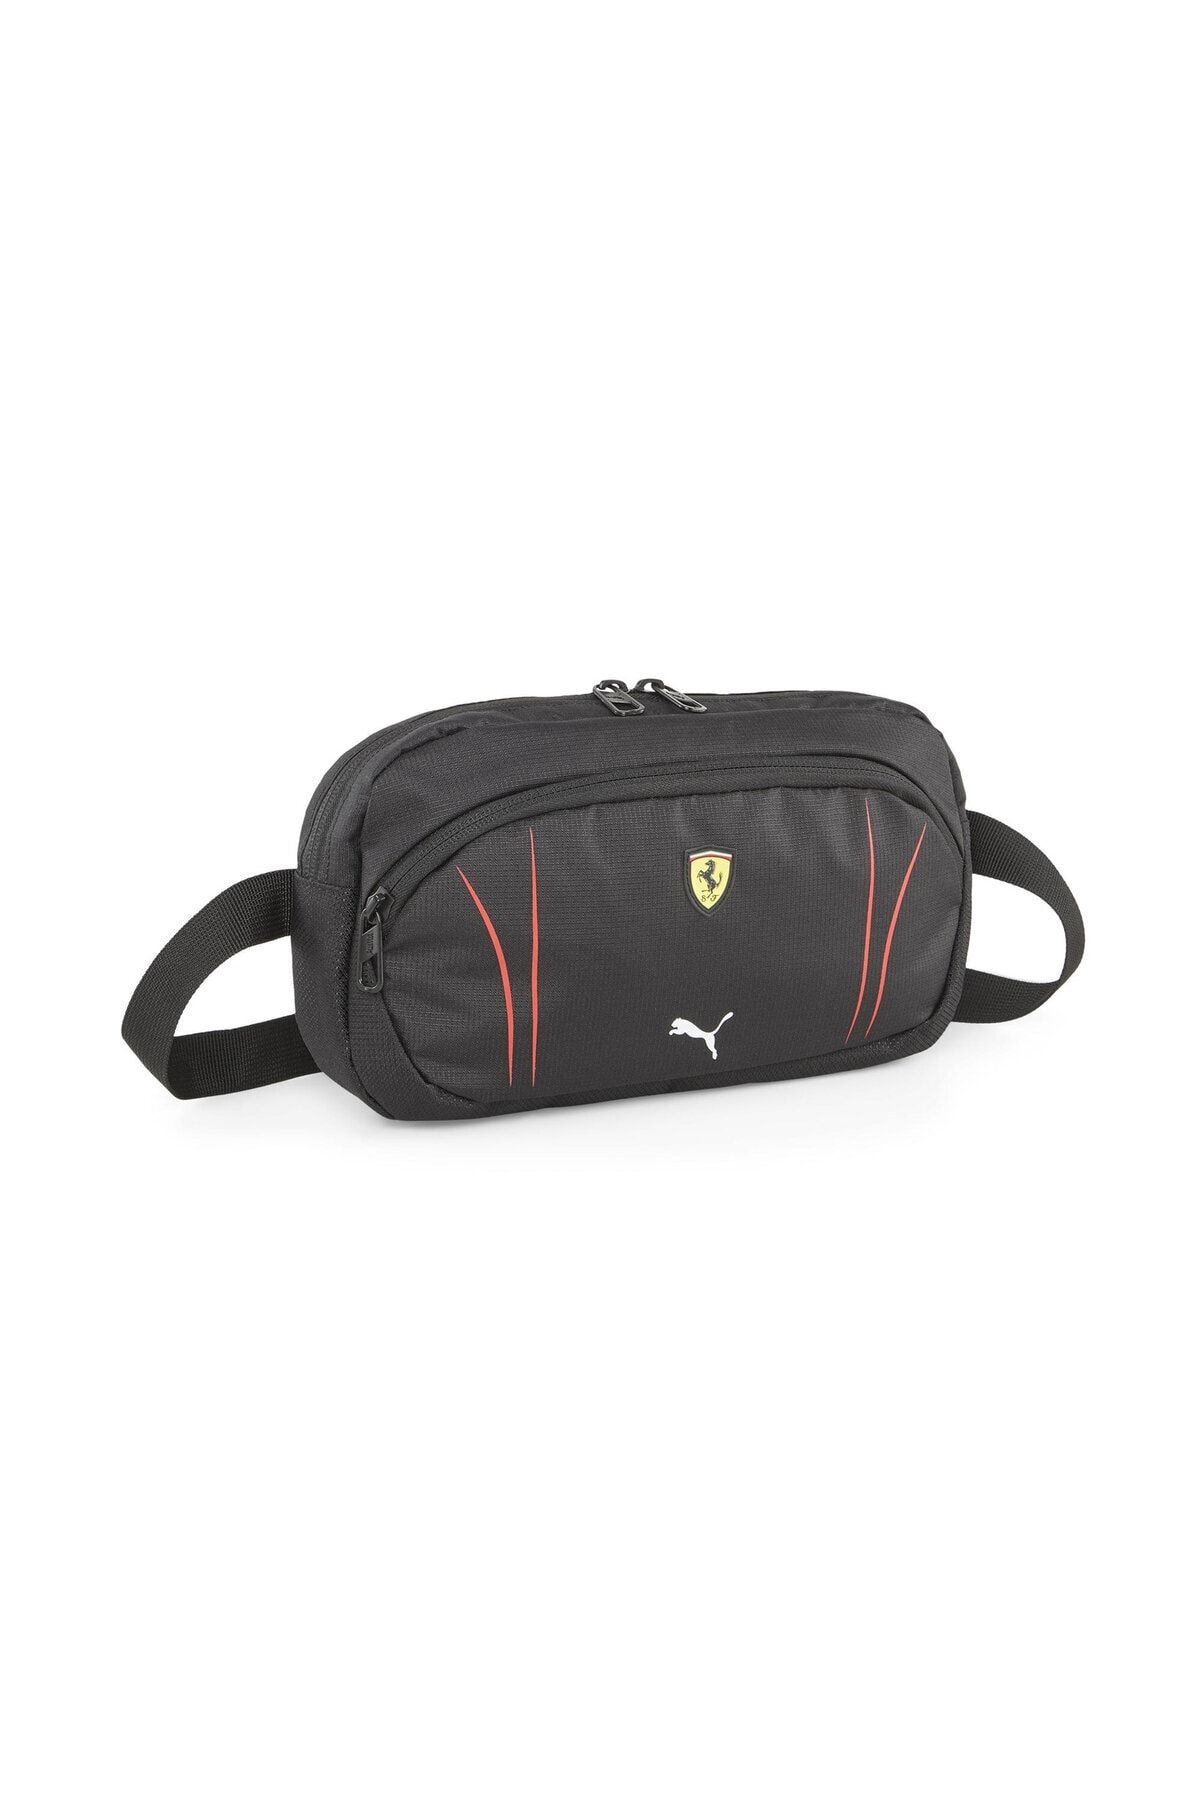 Puma Ferrari Sptwr Race Waist Bag Bel Çantası (2L) 7982502 Siyah